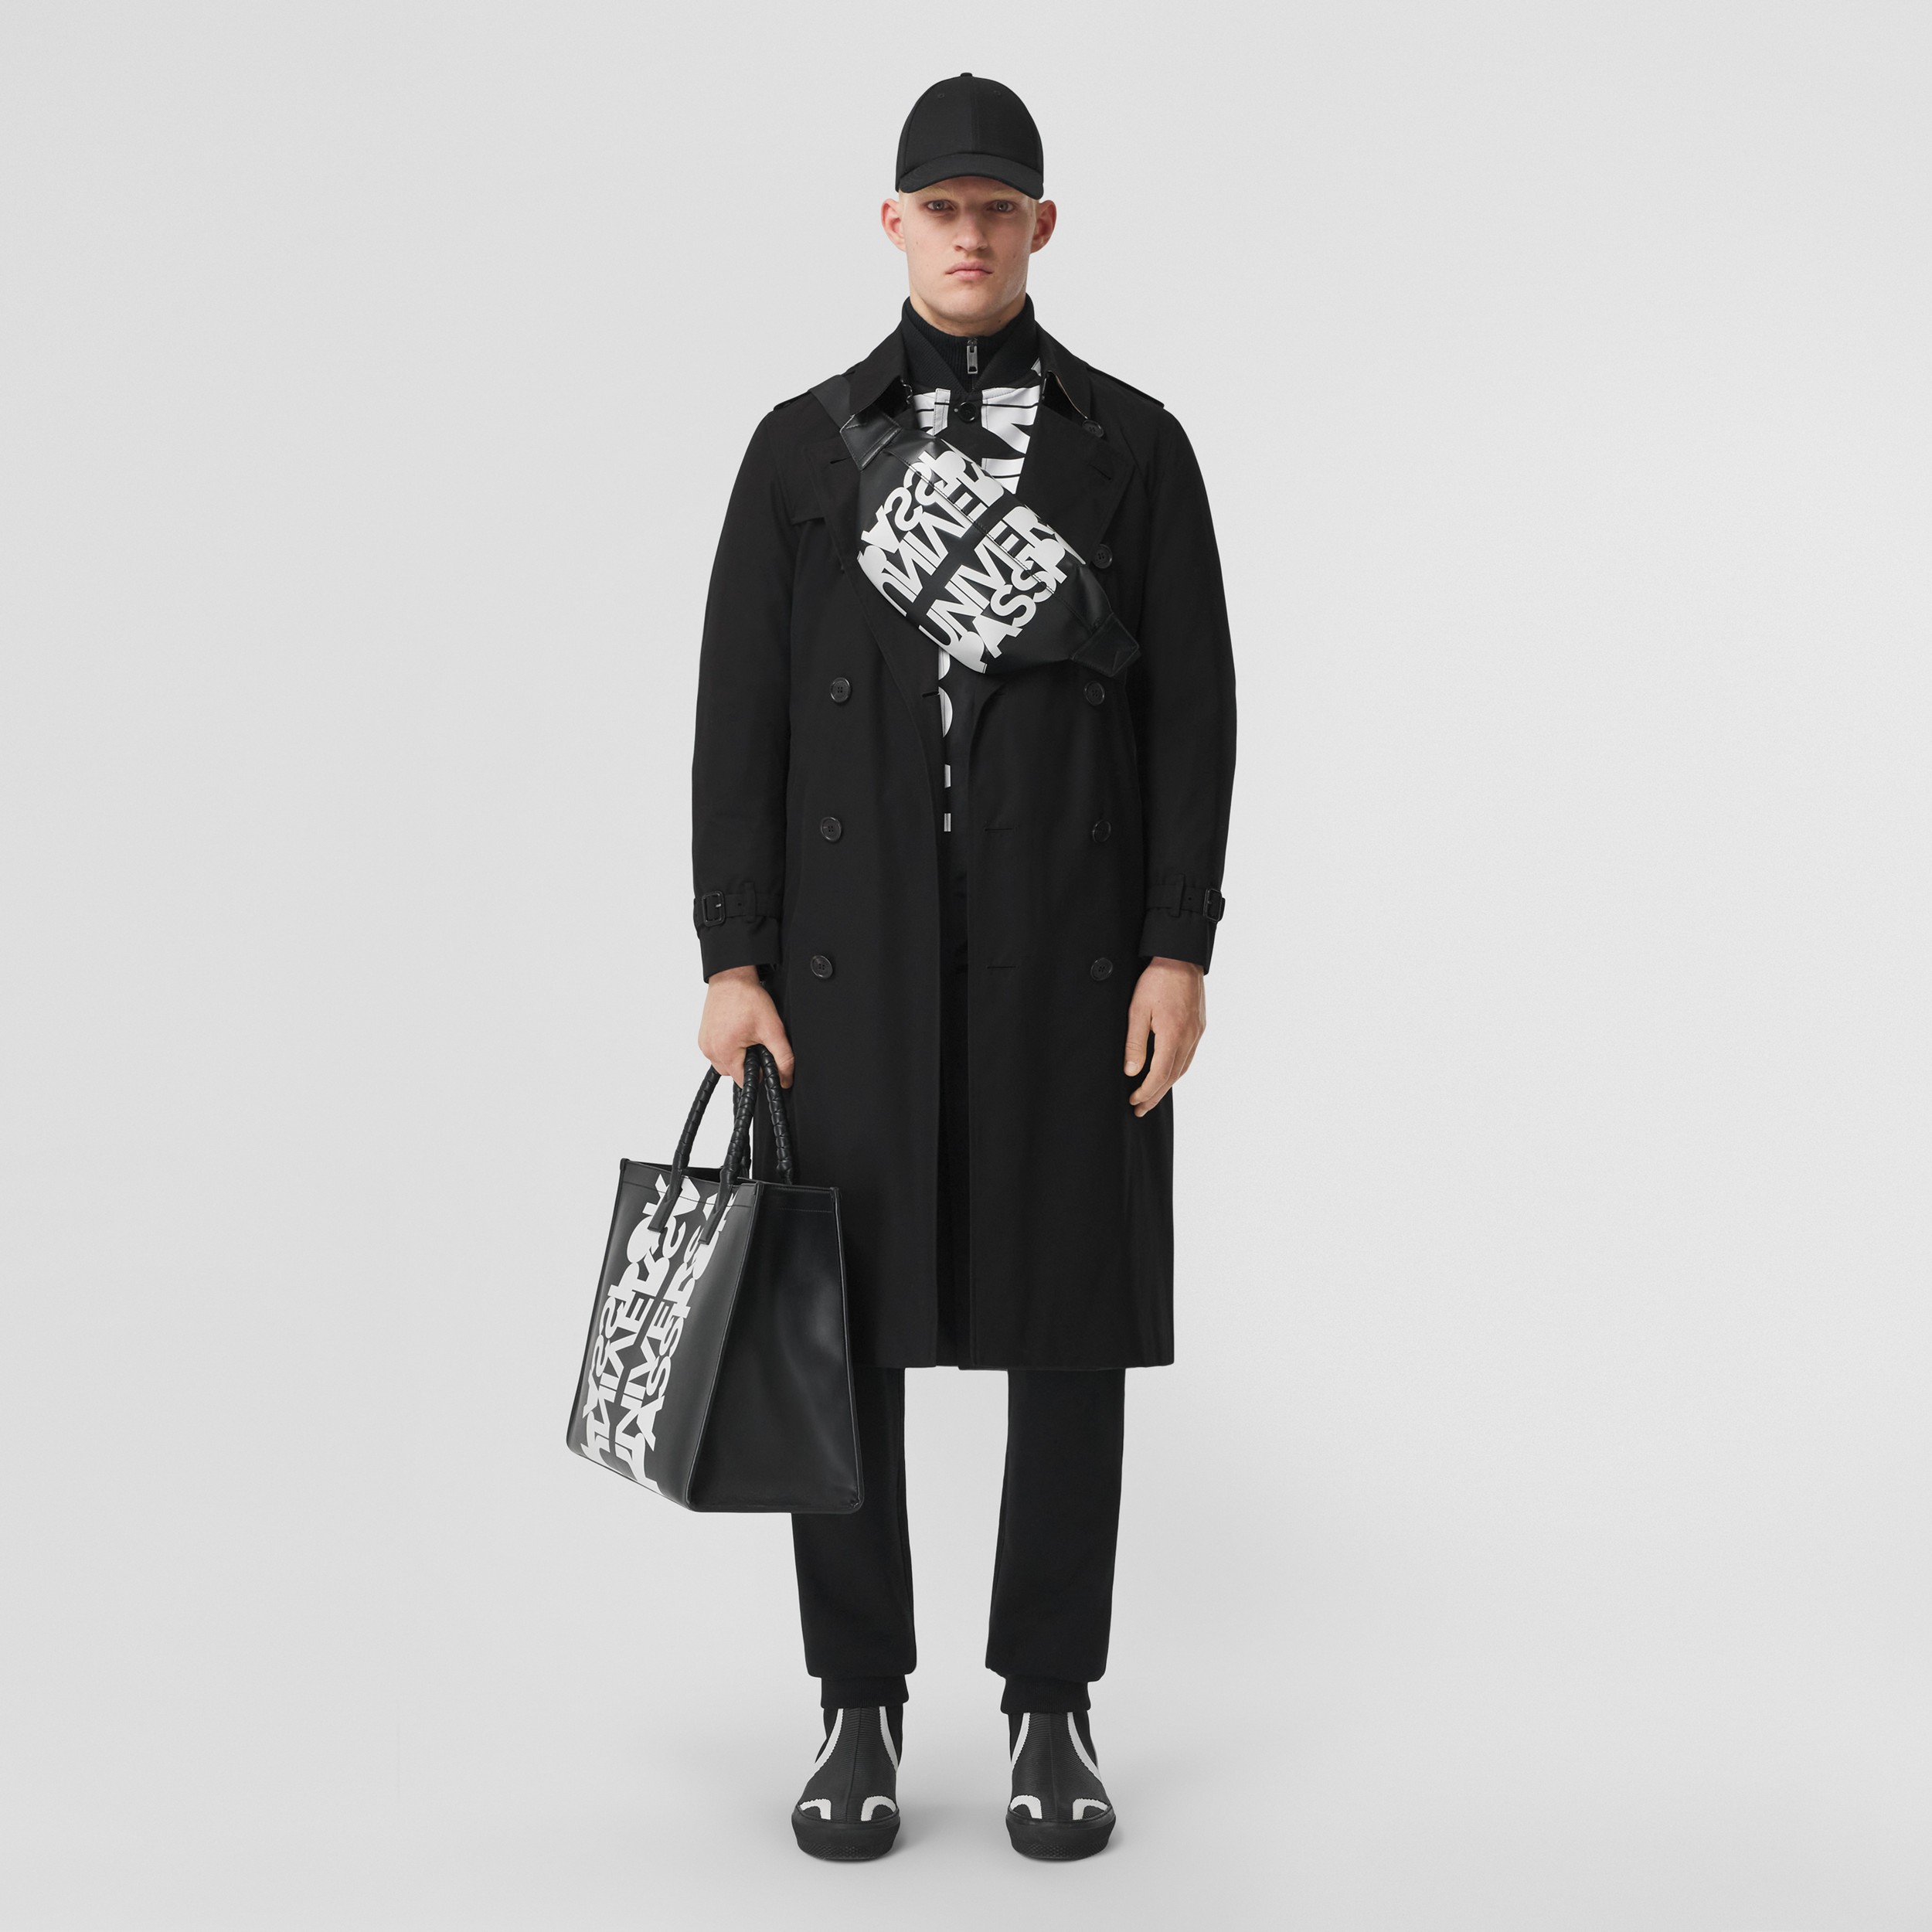 Trench kensington heritage Coton Burberry pour homme en coloris Noir Homme Vêtements Manteaux Imperméables et trench coats 80 % de réduction 